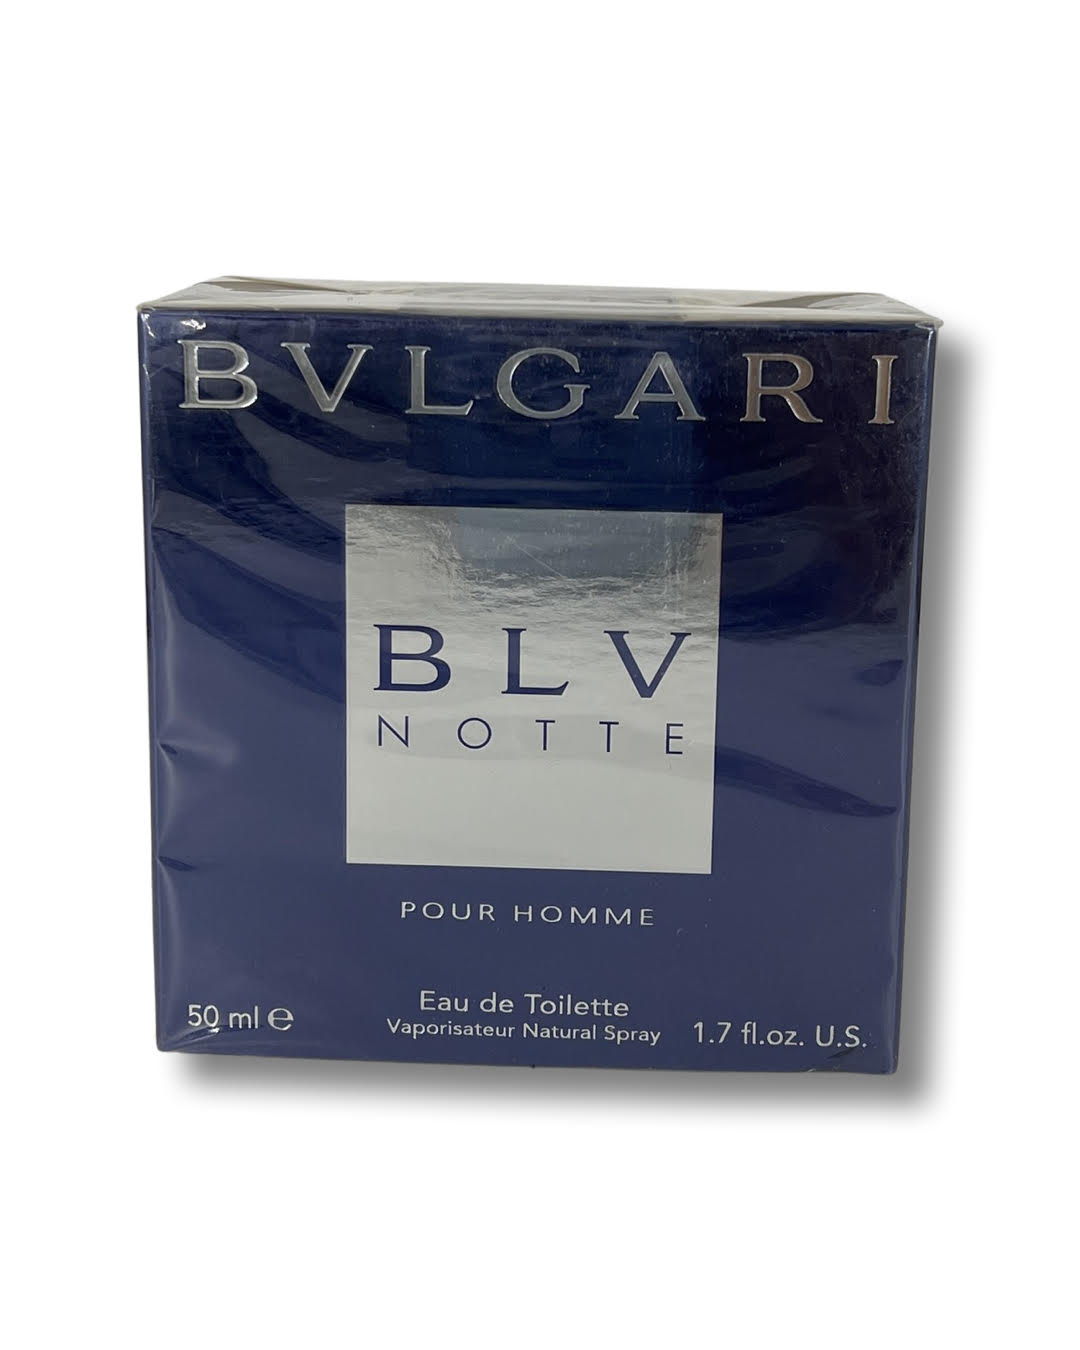 Bvlgari BLV Eau de Toilette (edt) 3.4oz (100ml) Spray